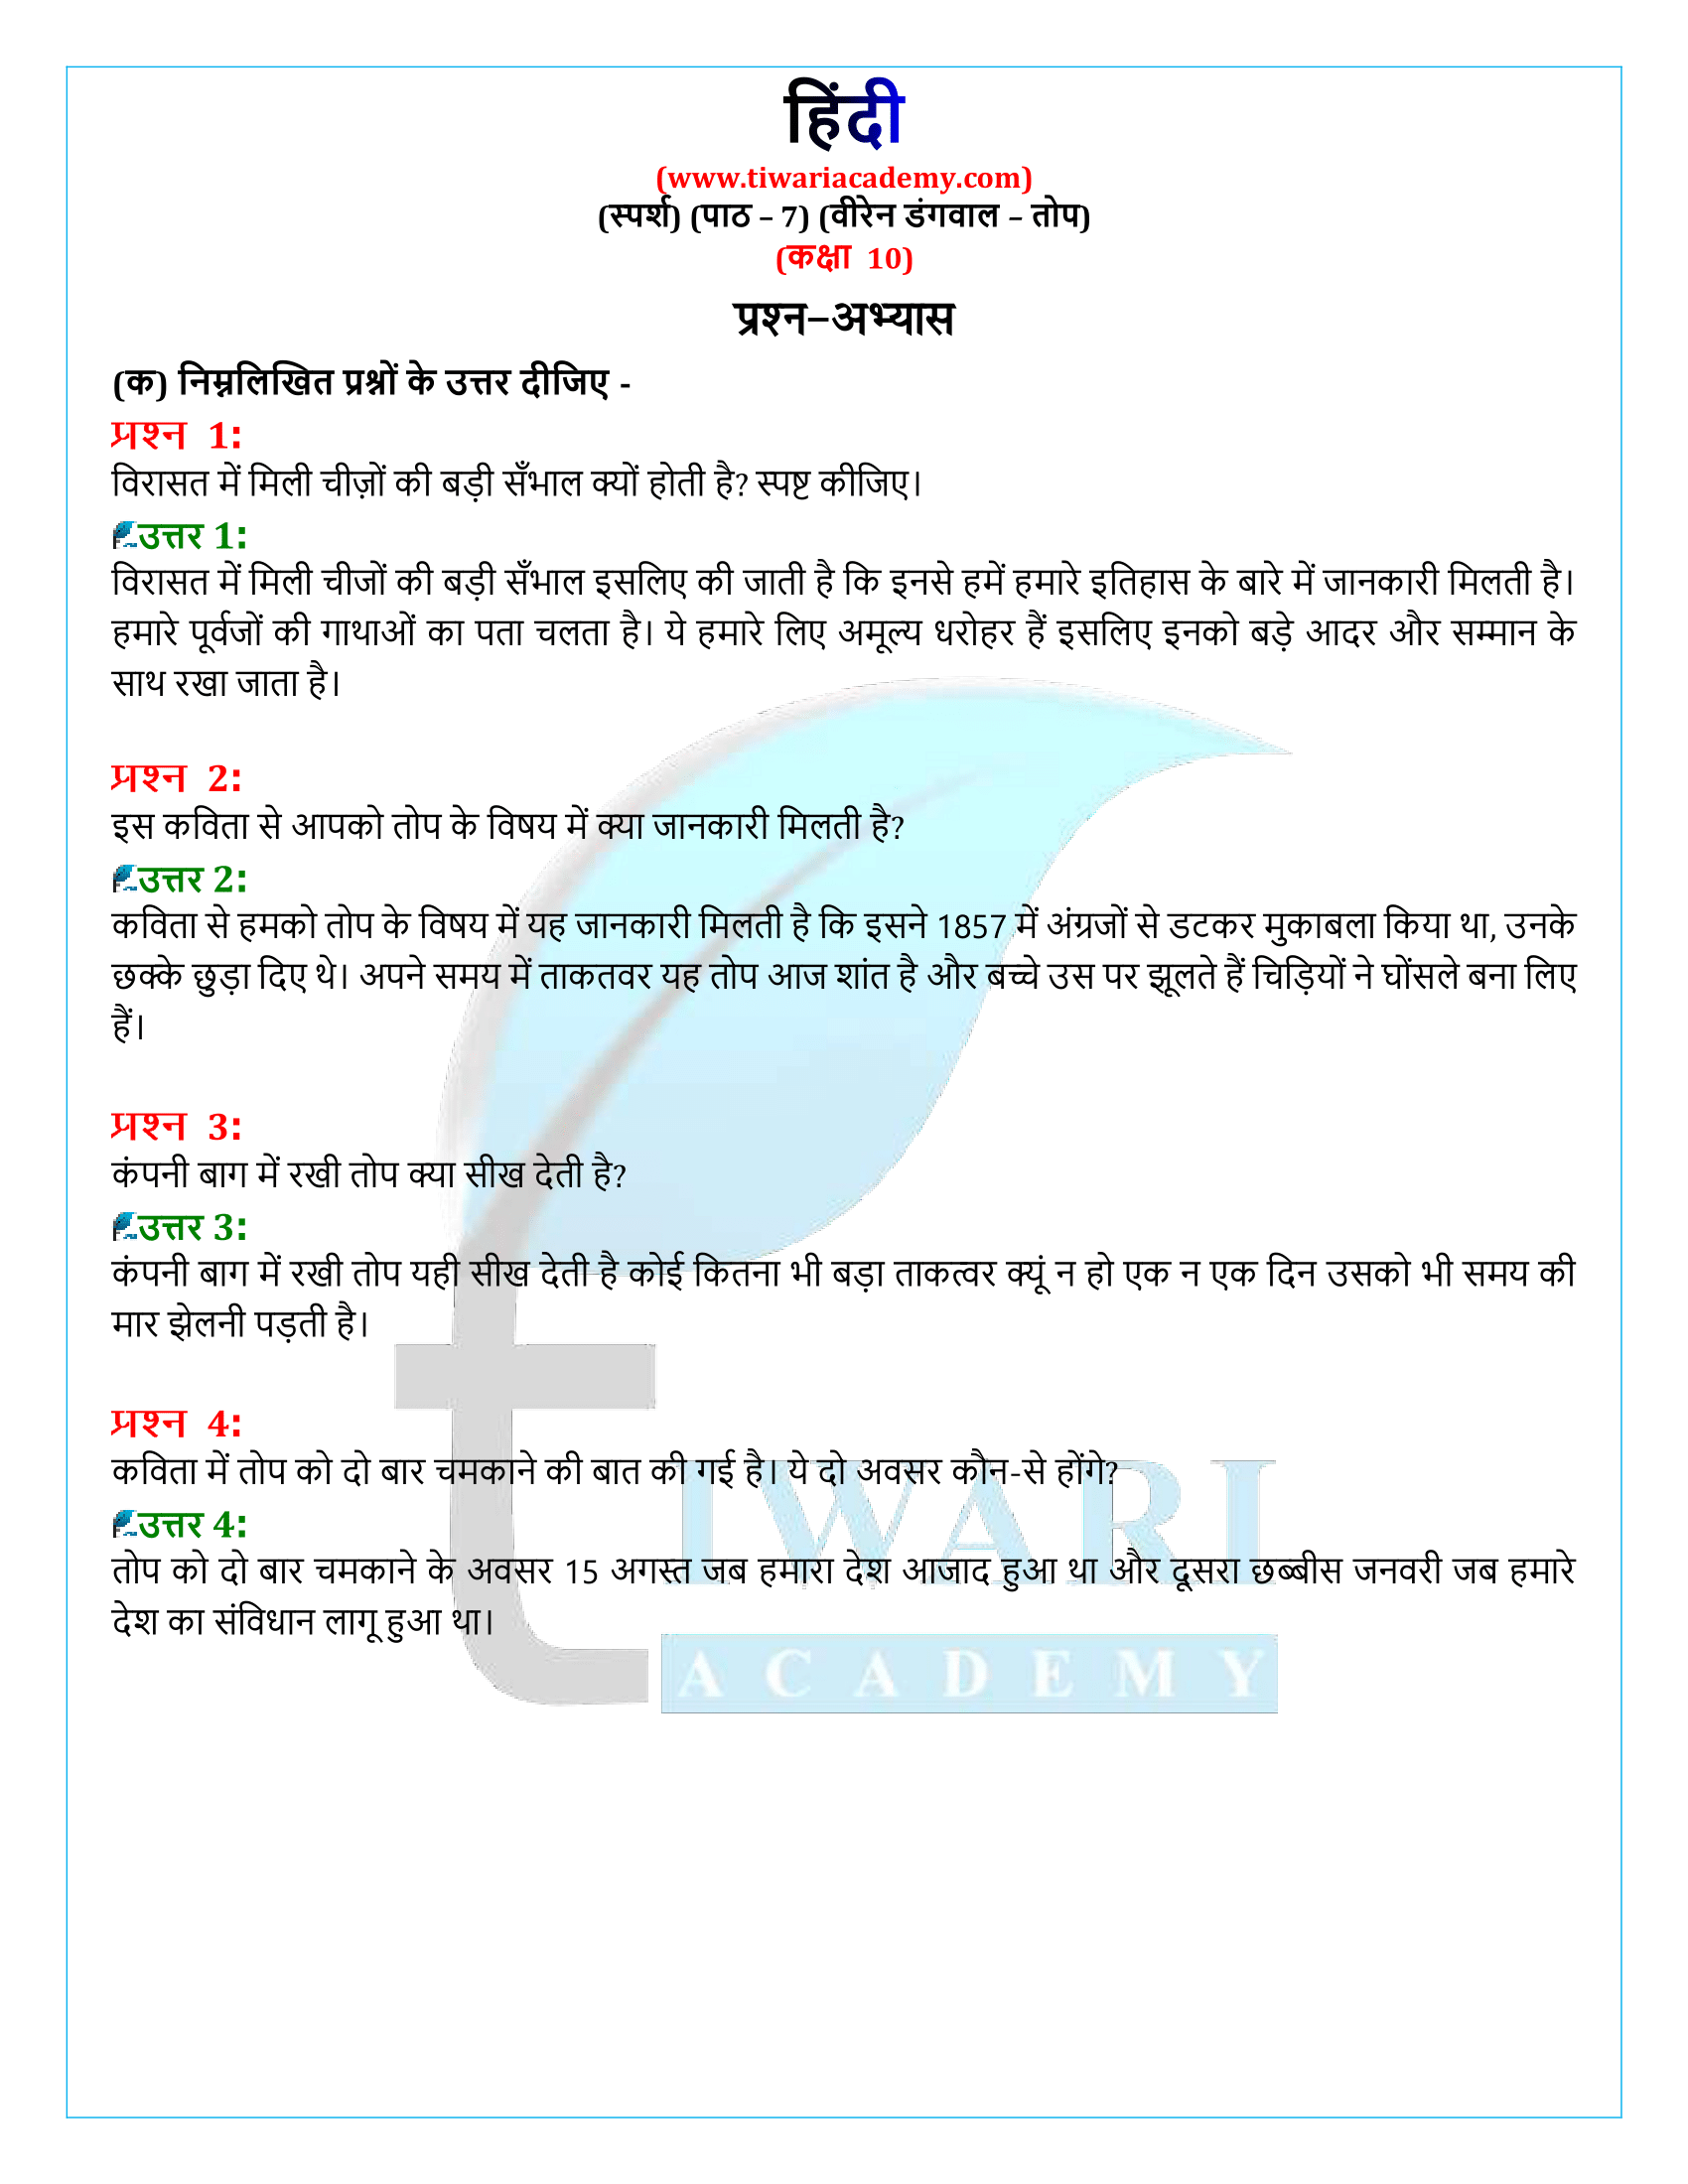 कक्षा 10 हिंदी स्पर्श अध्याय 7 के प्रश्न उत्तर